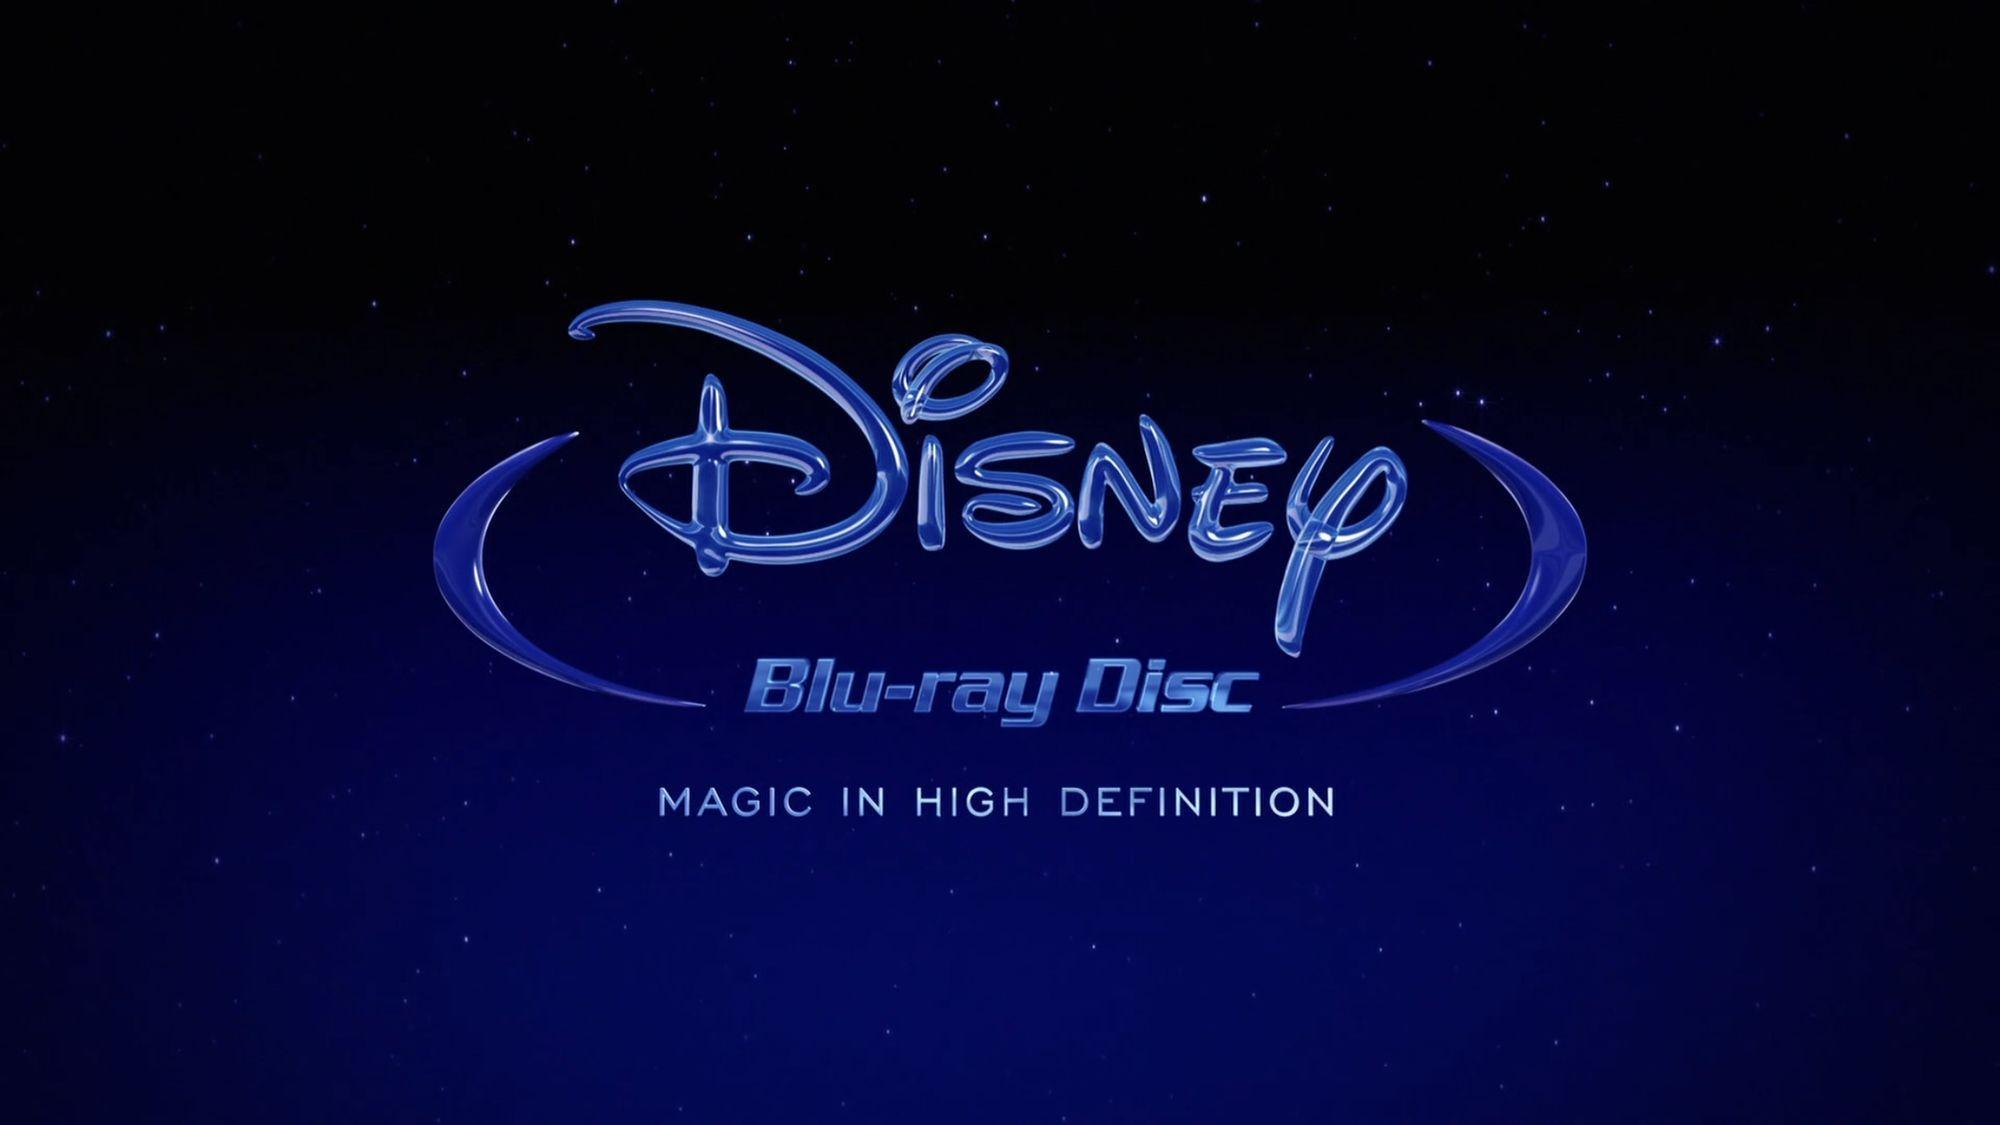 Disney Blu-ray Logo - Disney Blu-ray Disc | Logopedia | FANDOM powered by Wikia